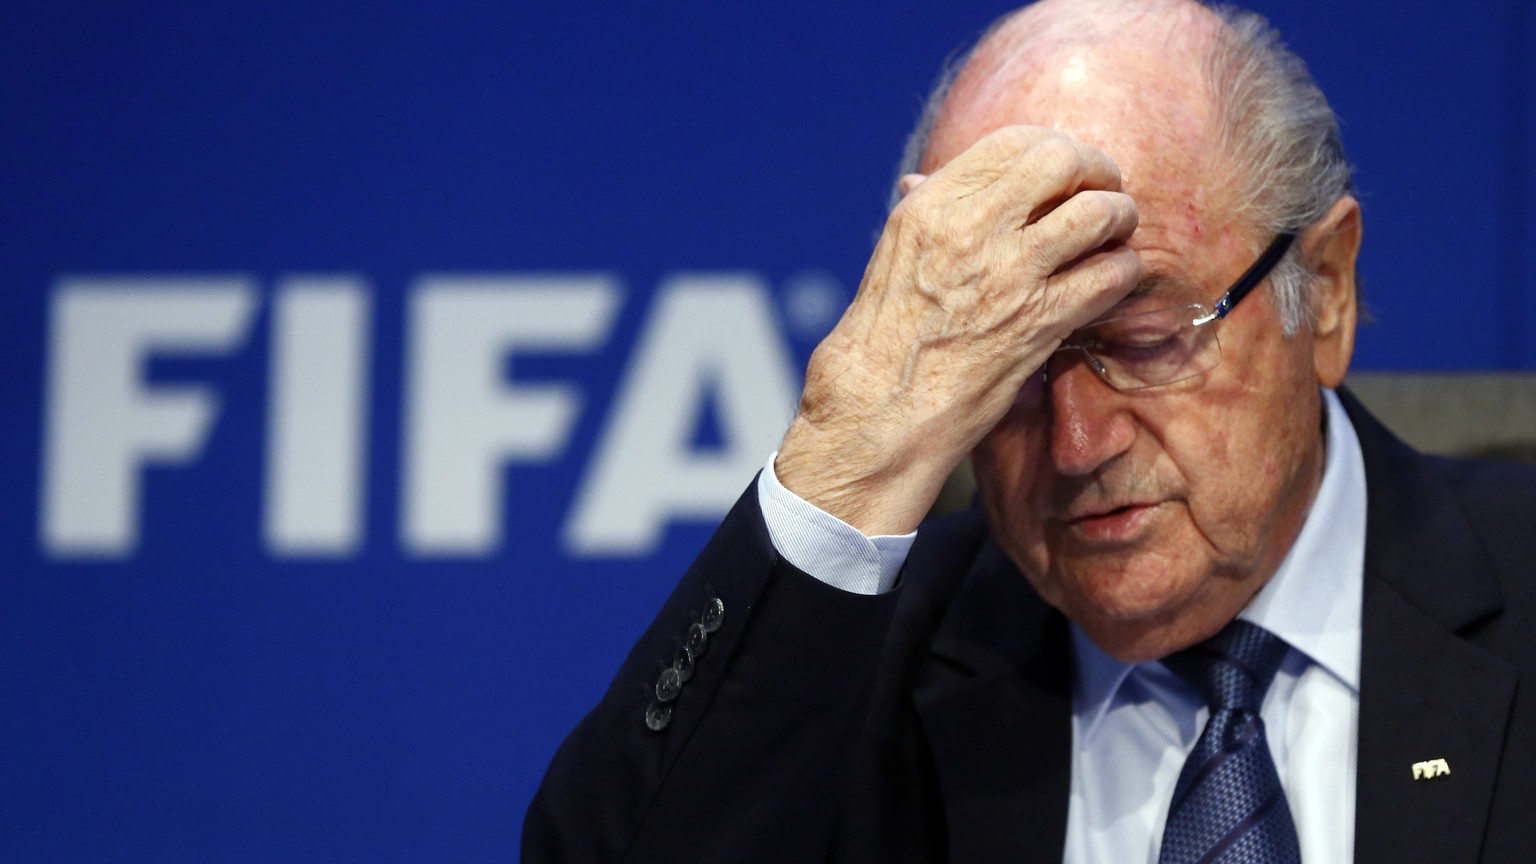 Trotz Rücktrittsforderungen von Sponsoren will Sepp Blatter vorläufig im Amt bleiben.